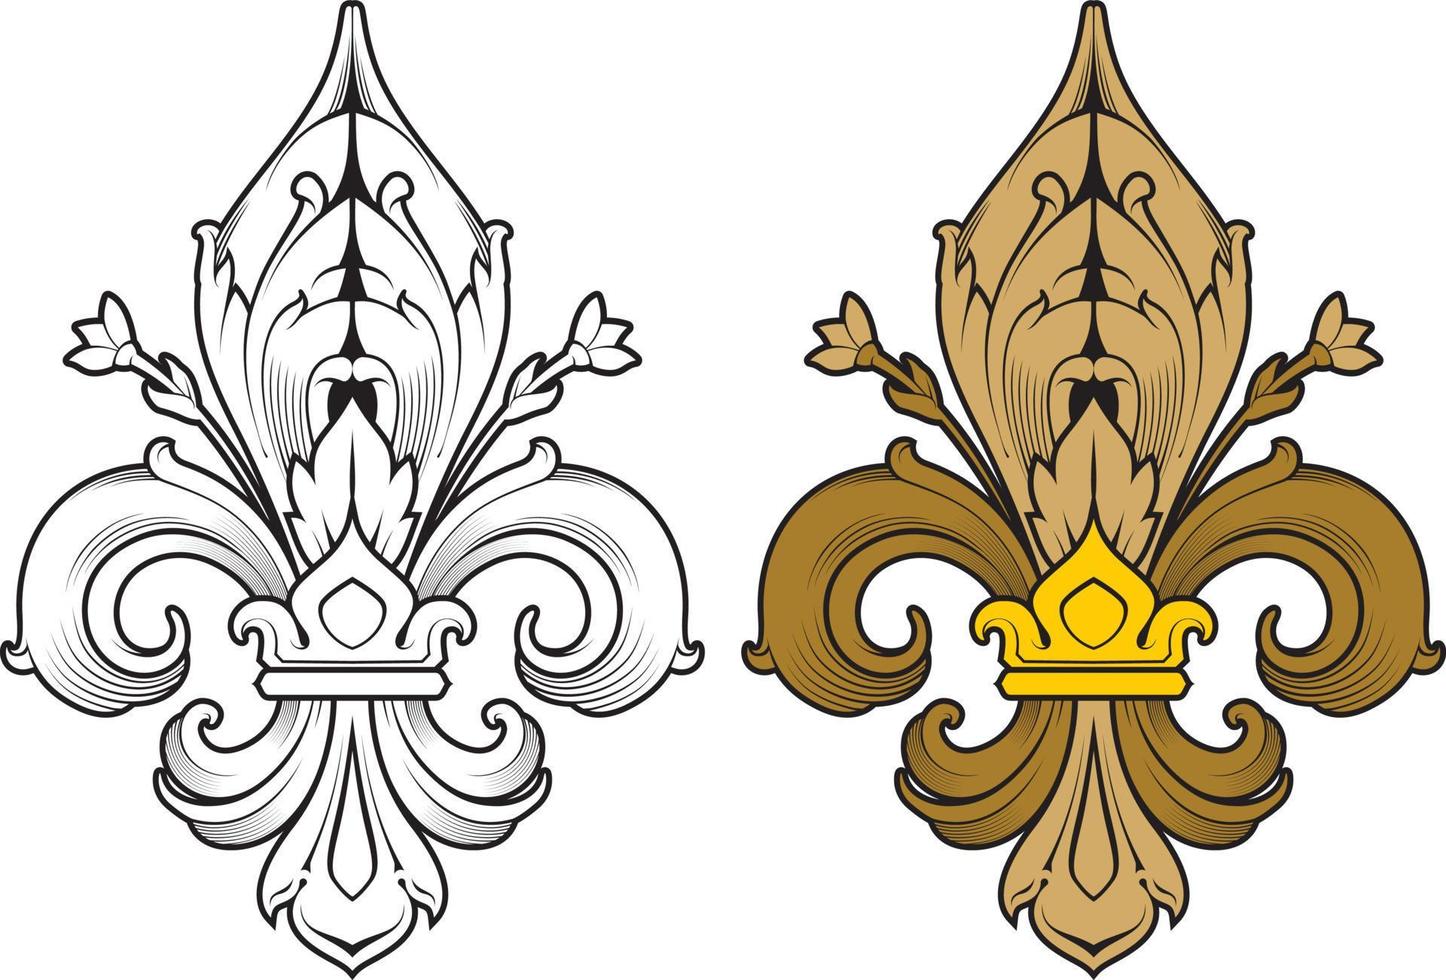 símbolo da flor de lis, silhueta - símbolo heráldico. ilustração vetorial. signo medieval. vetor